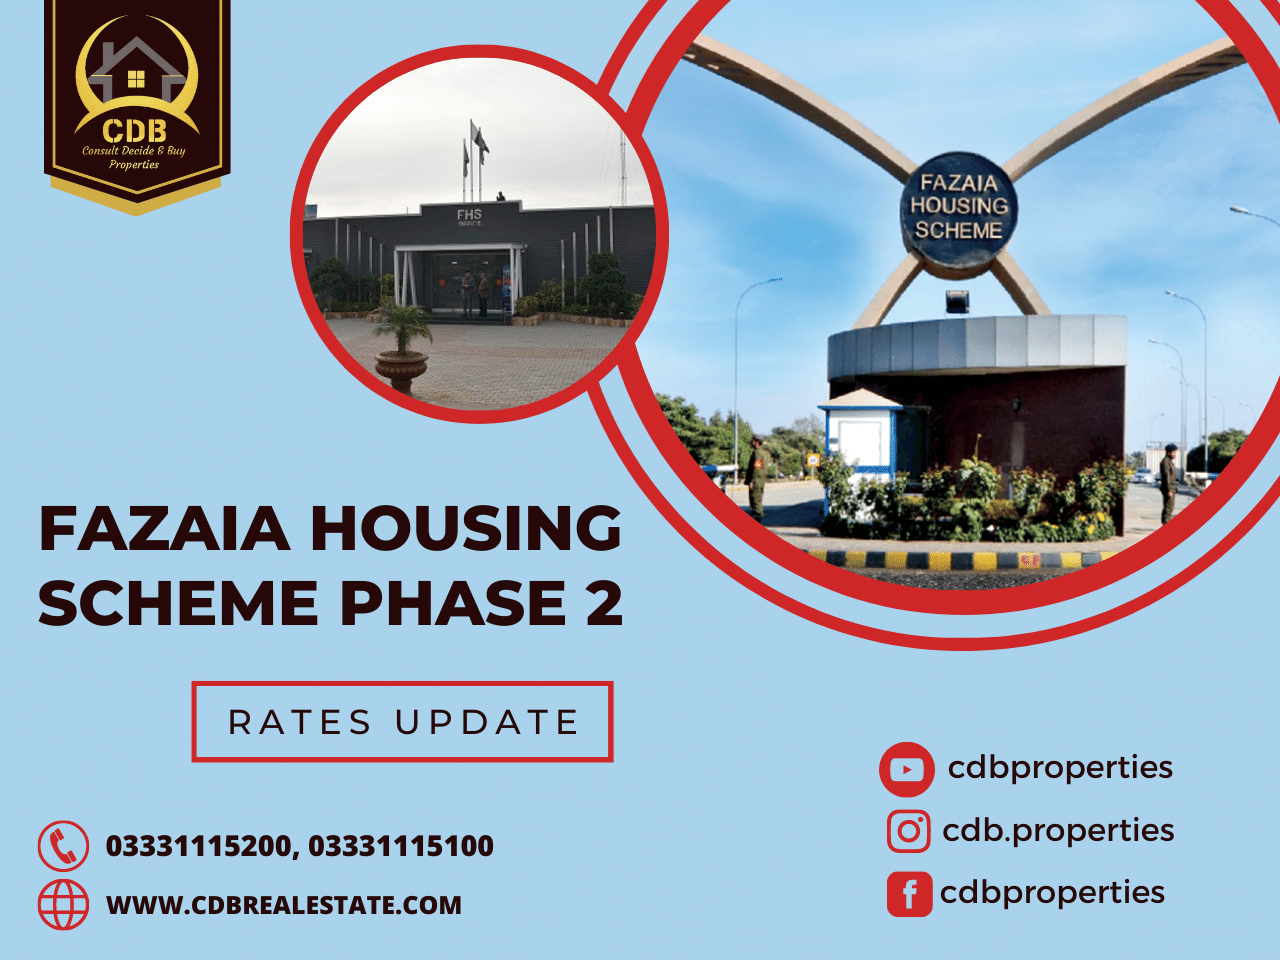 Fazaia Housing Scheme Phase 2